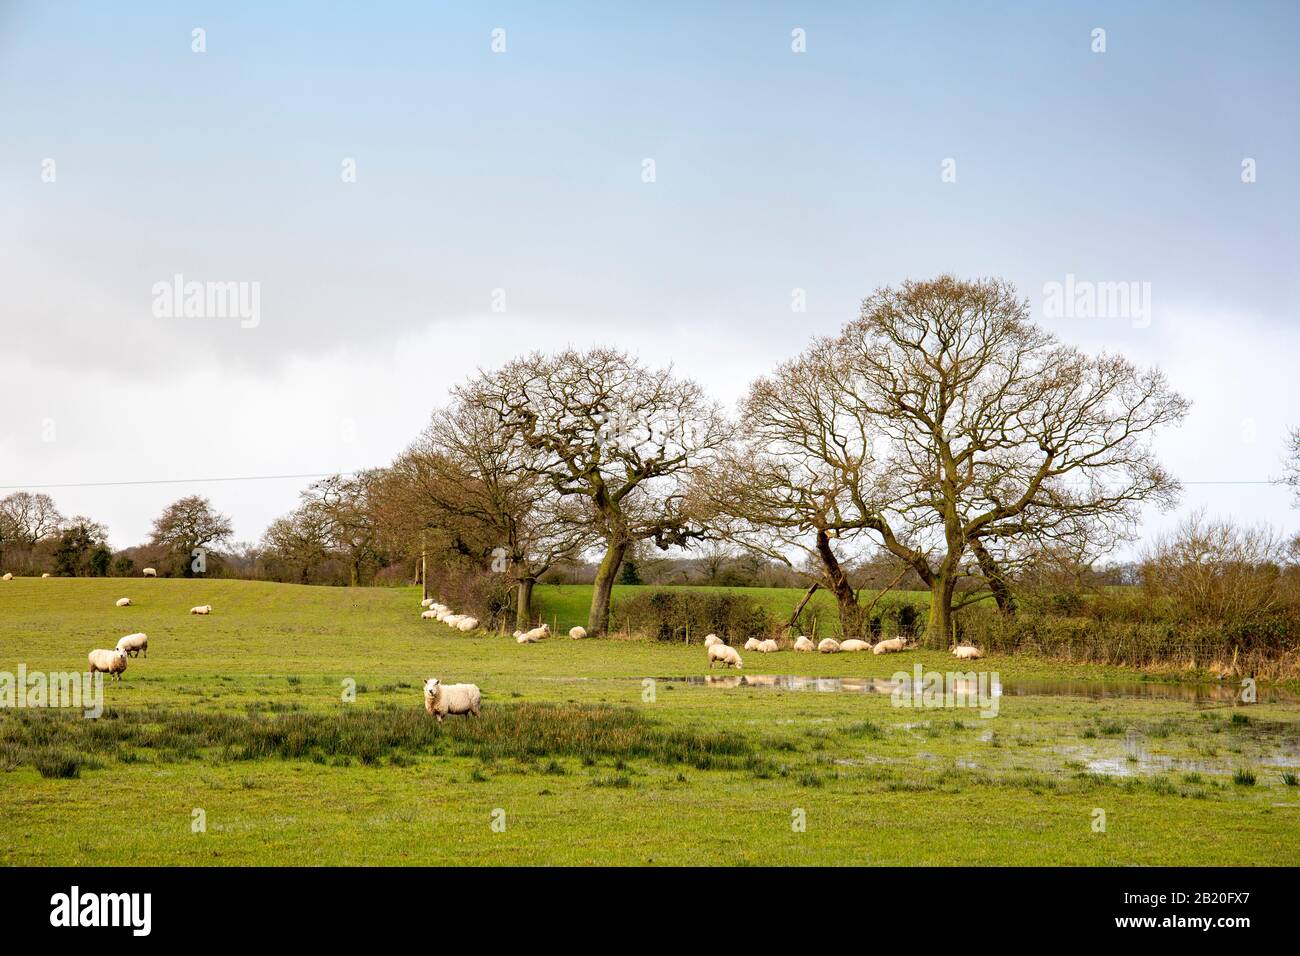 Troupeau de moutons qui s'abritent sous les arbres dans un champ humide, Cheshire UK Banque D'Images